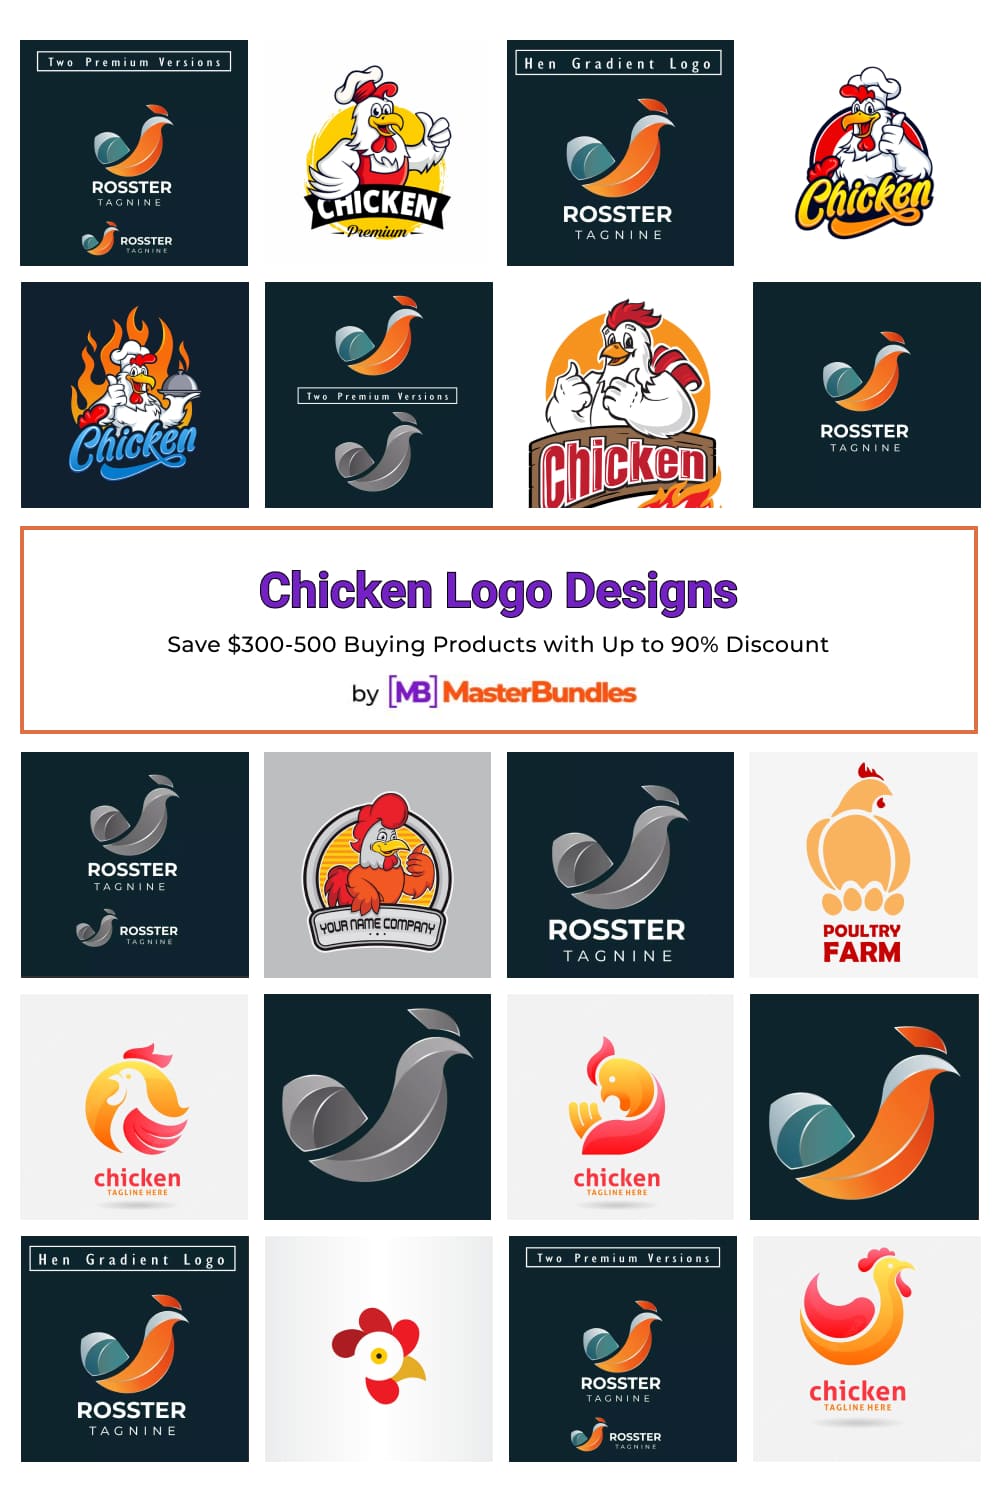 Chicken Logo Designs Pinterest image.